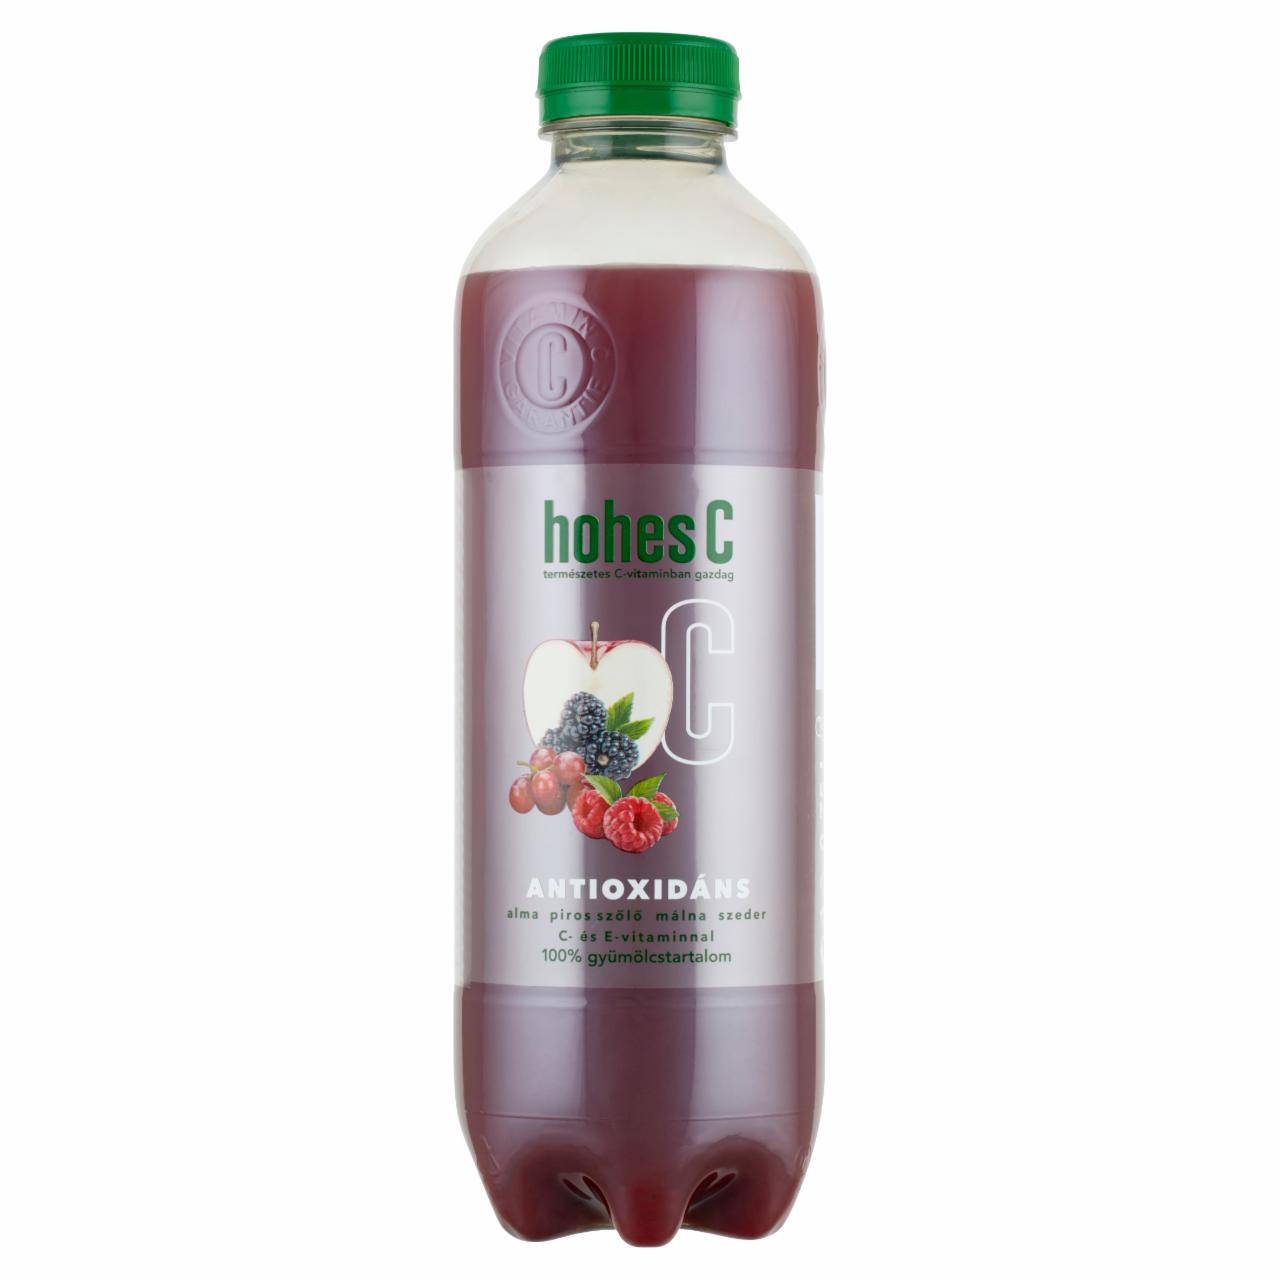 Képek - Hohes C Antioxidáns 100% alma-piros szőlő-málna-szeder vegyes gyümölcslé C- és E-vitaminnal 0,75 l